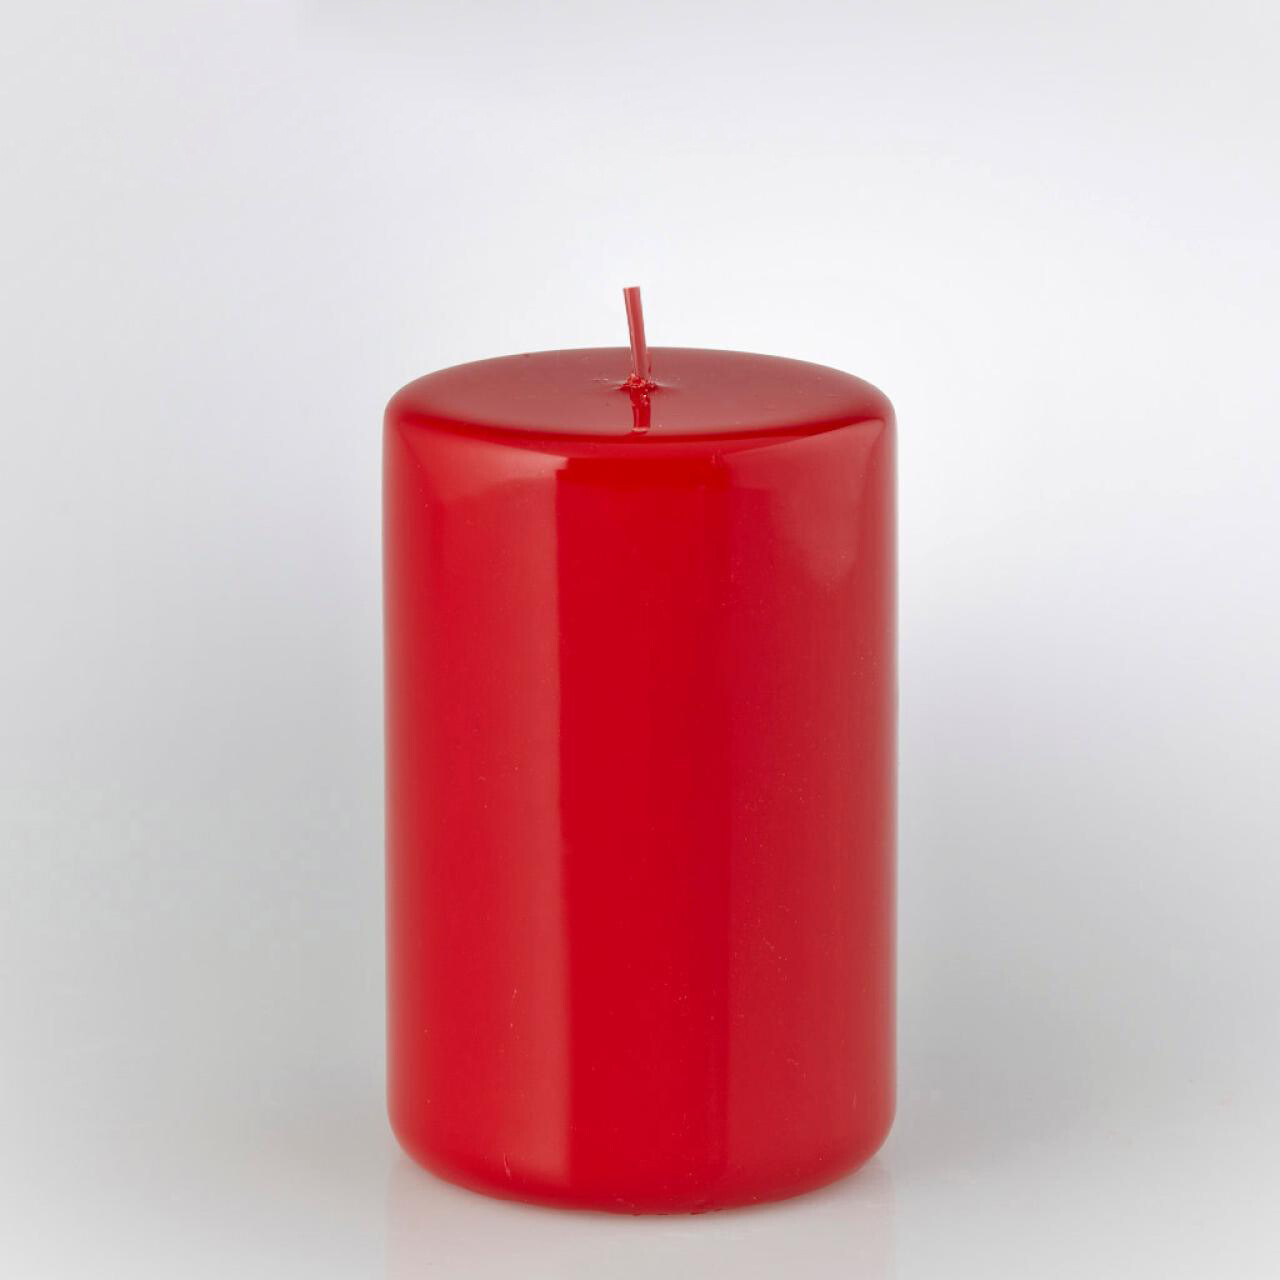 Candela moccolo rosso laccato - H.12 cm - EDG